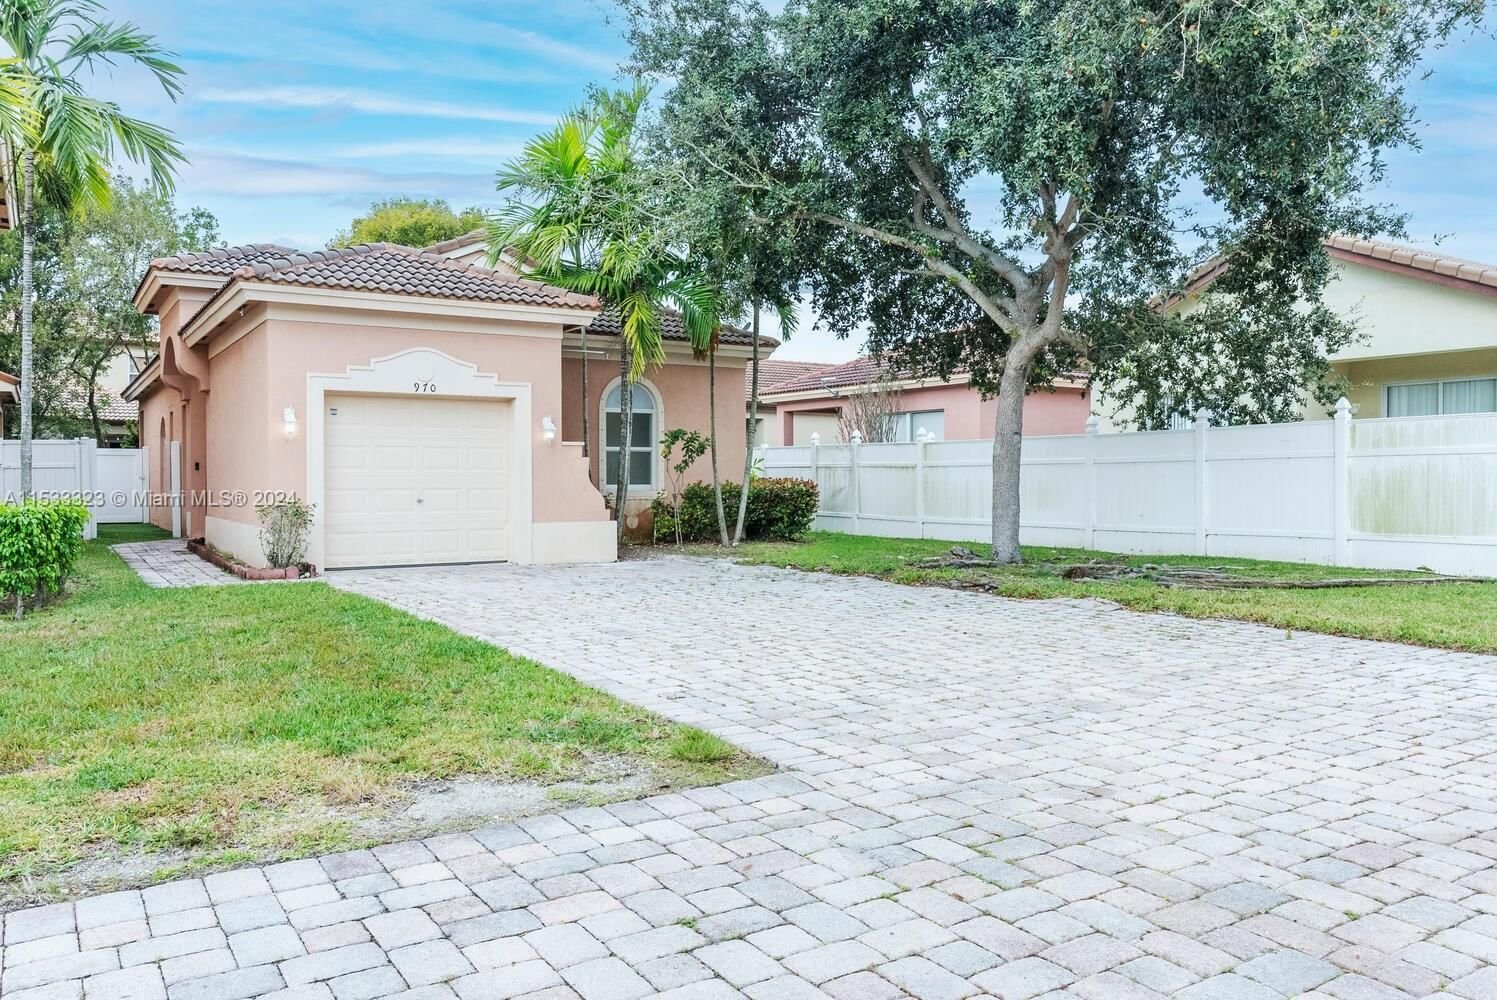 Real estate property located at 970 37th Pl, Miami-Dade County, PORTOFINO POINTE, Homestead, FL